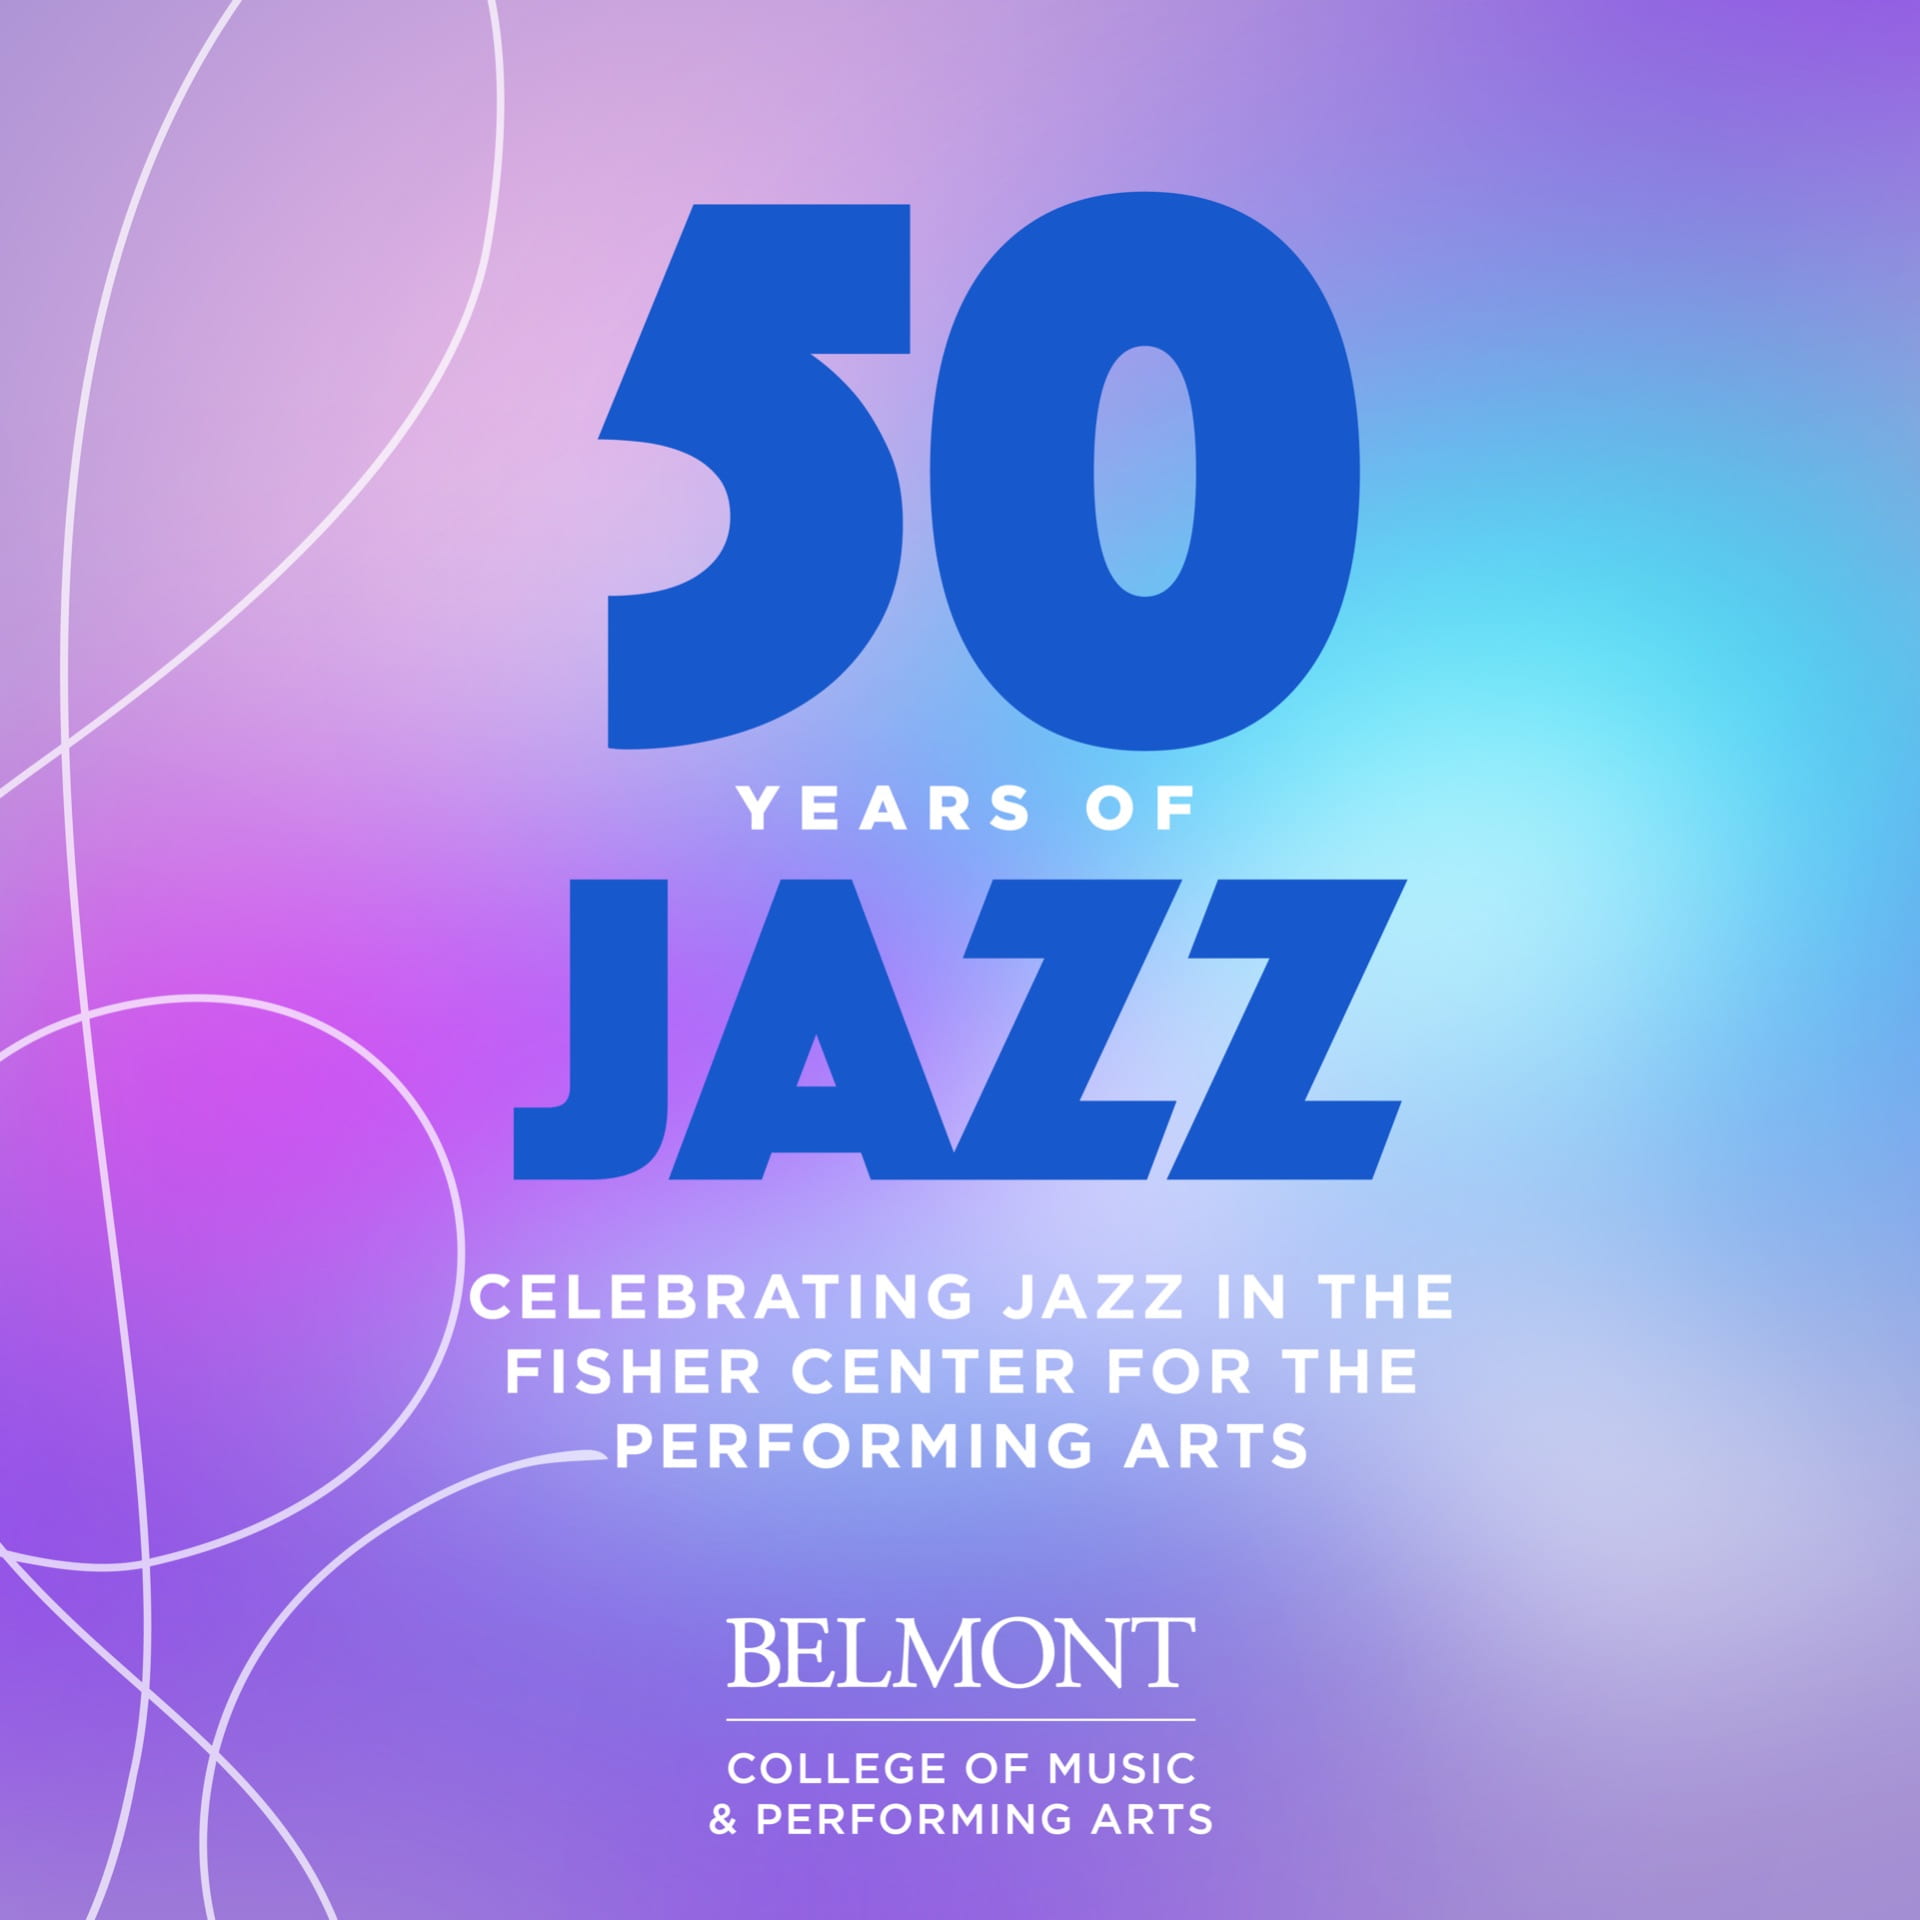 Celebrating 50 Years of Jazz at Belmont University